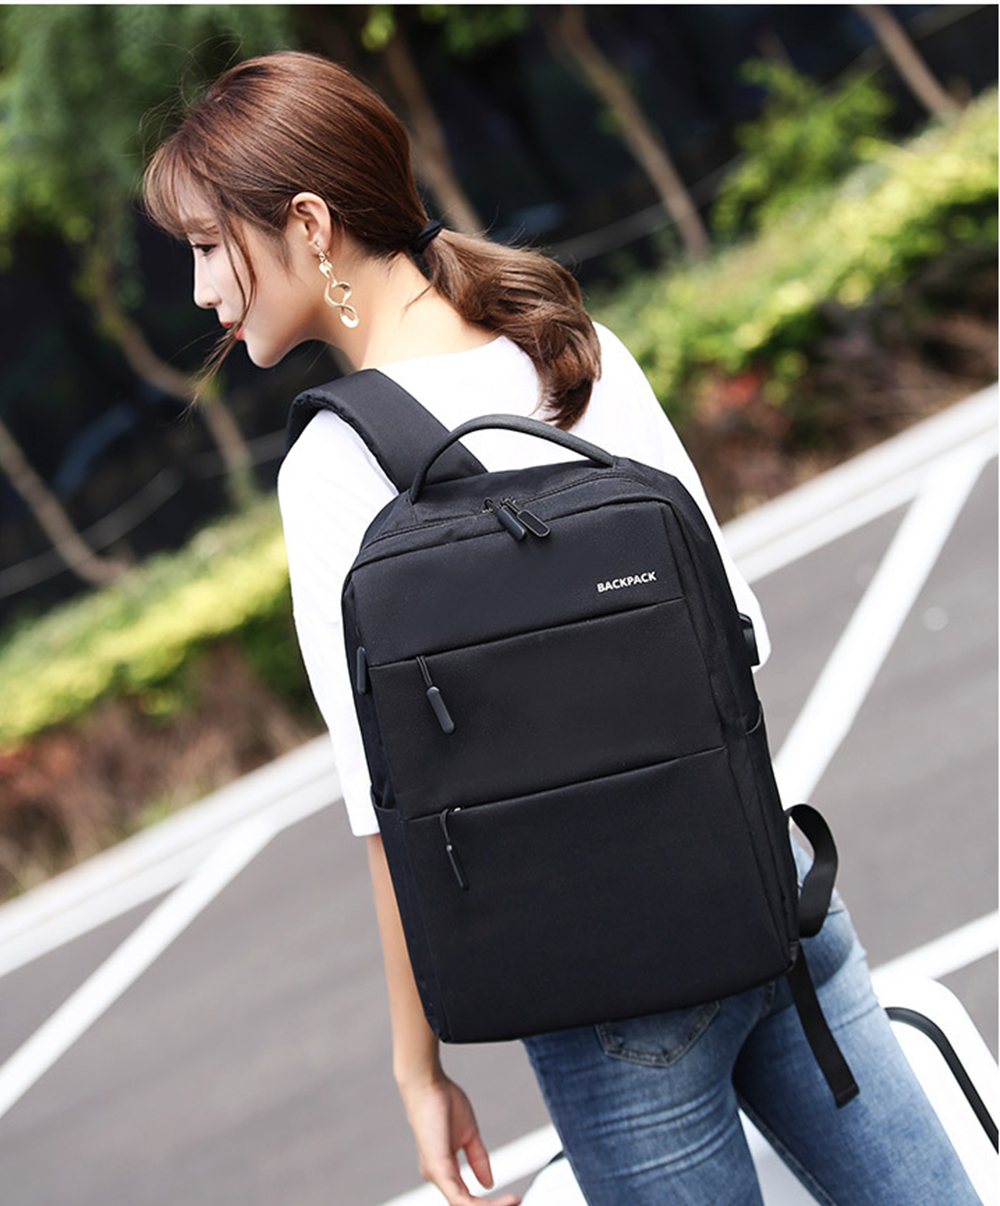 Balo laptop thời trang phong cách Backpack